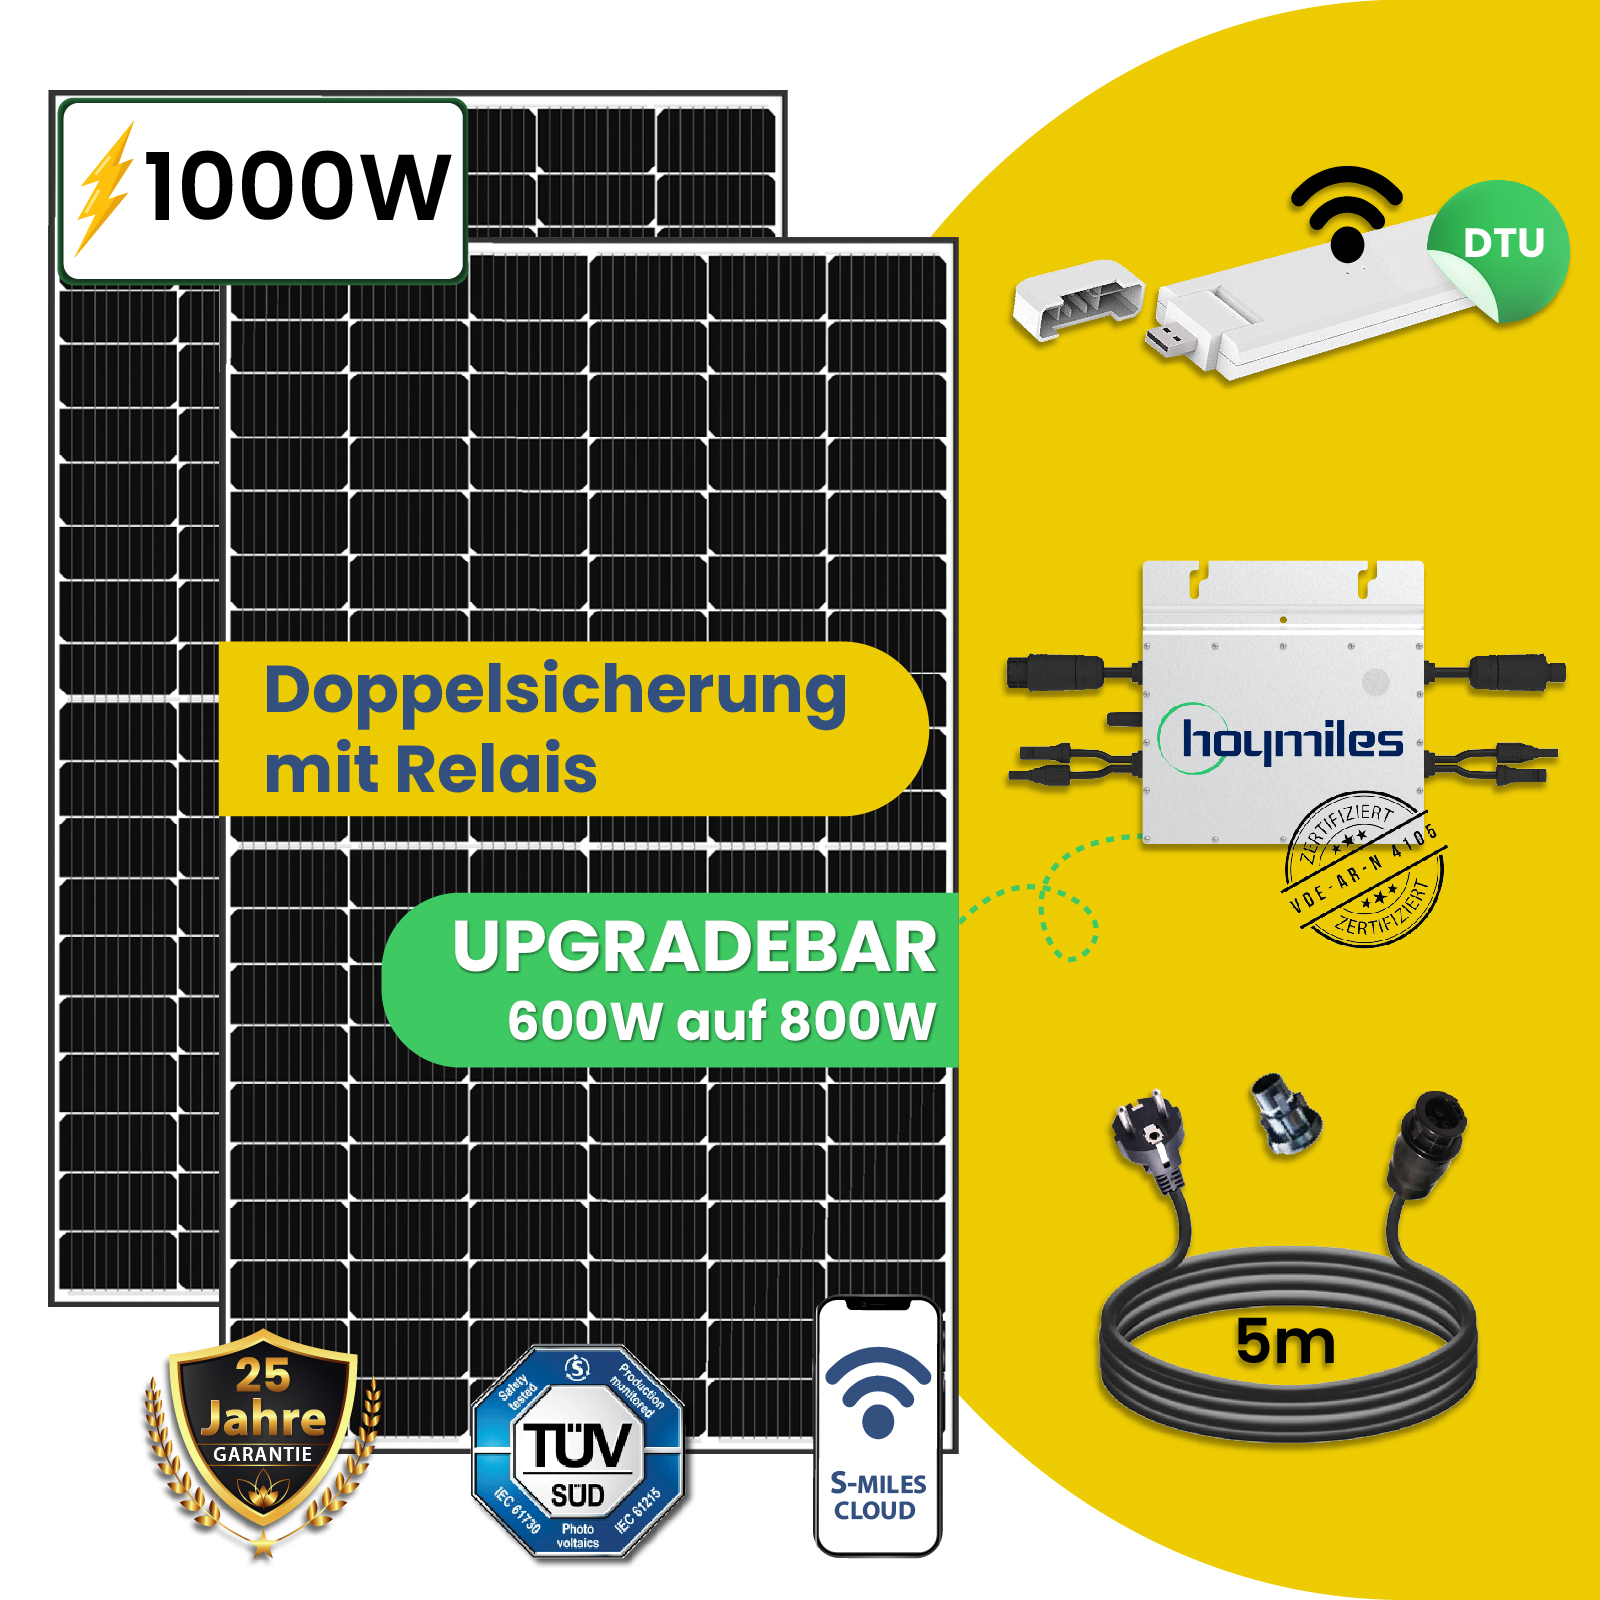 1000 W / 600 W Balkonkraftwerk - Upgradebar 800W Photovoltaik Stecker Solaranlage - Stegpearl